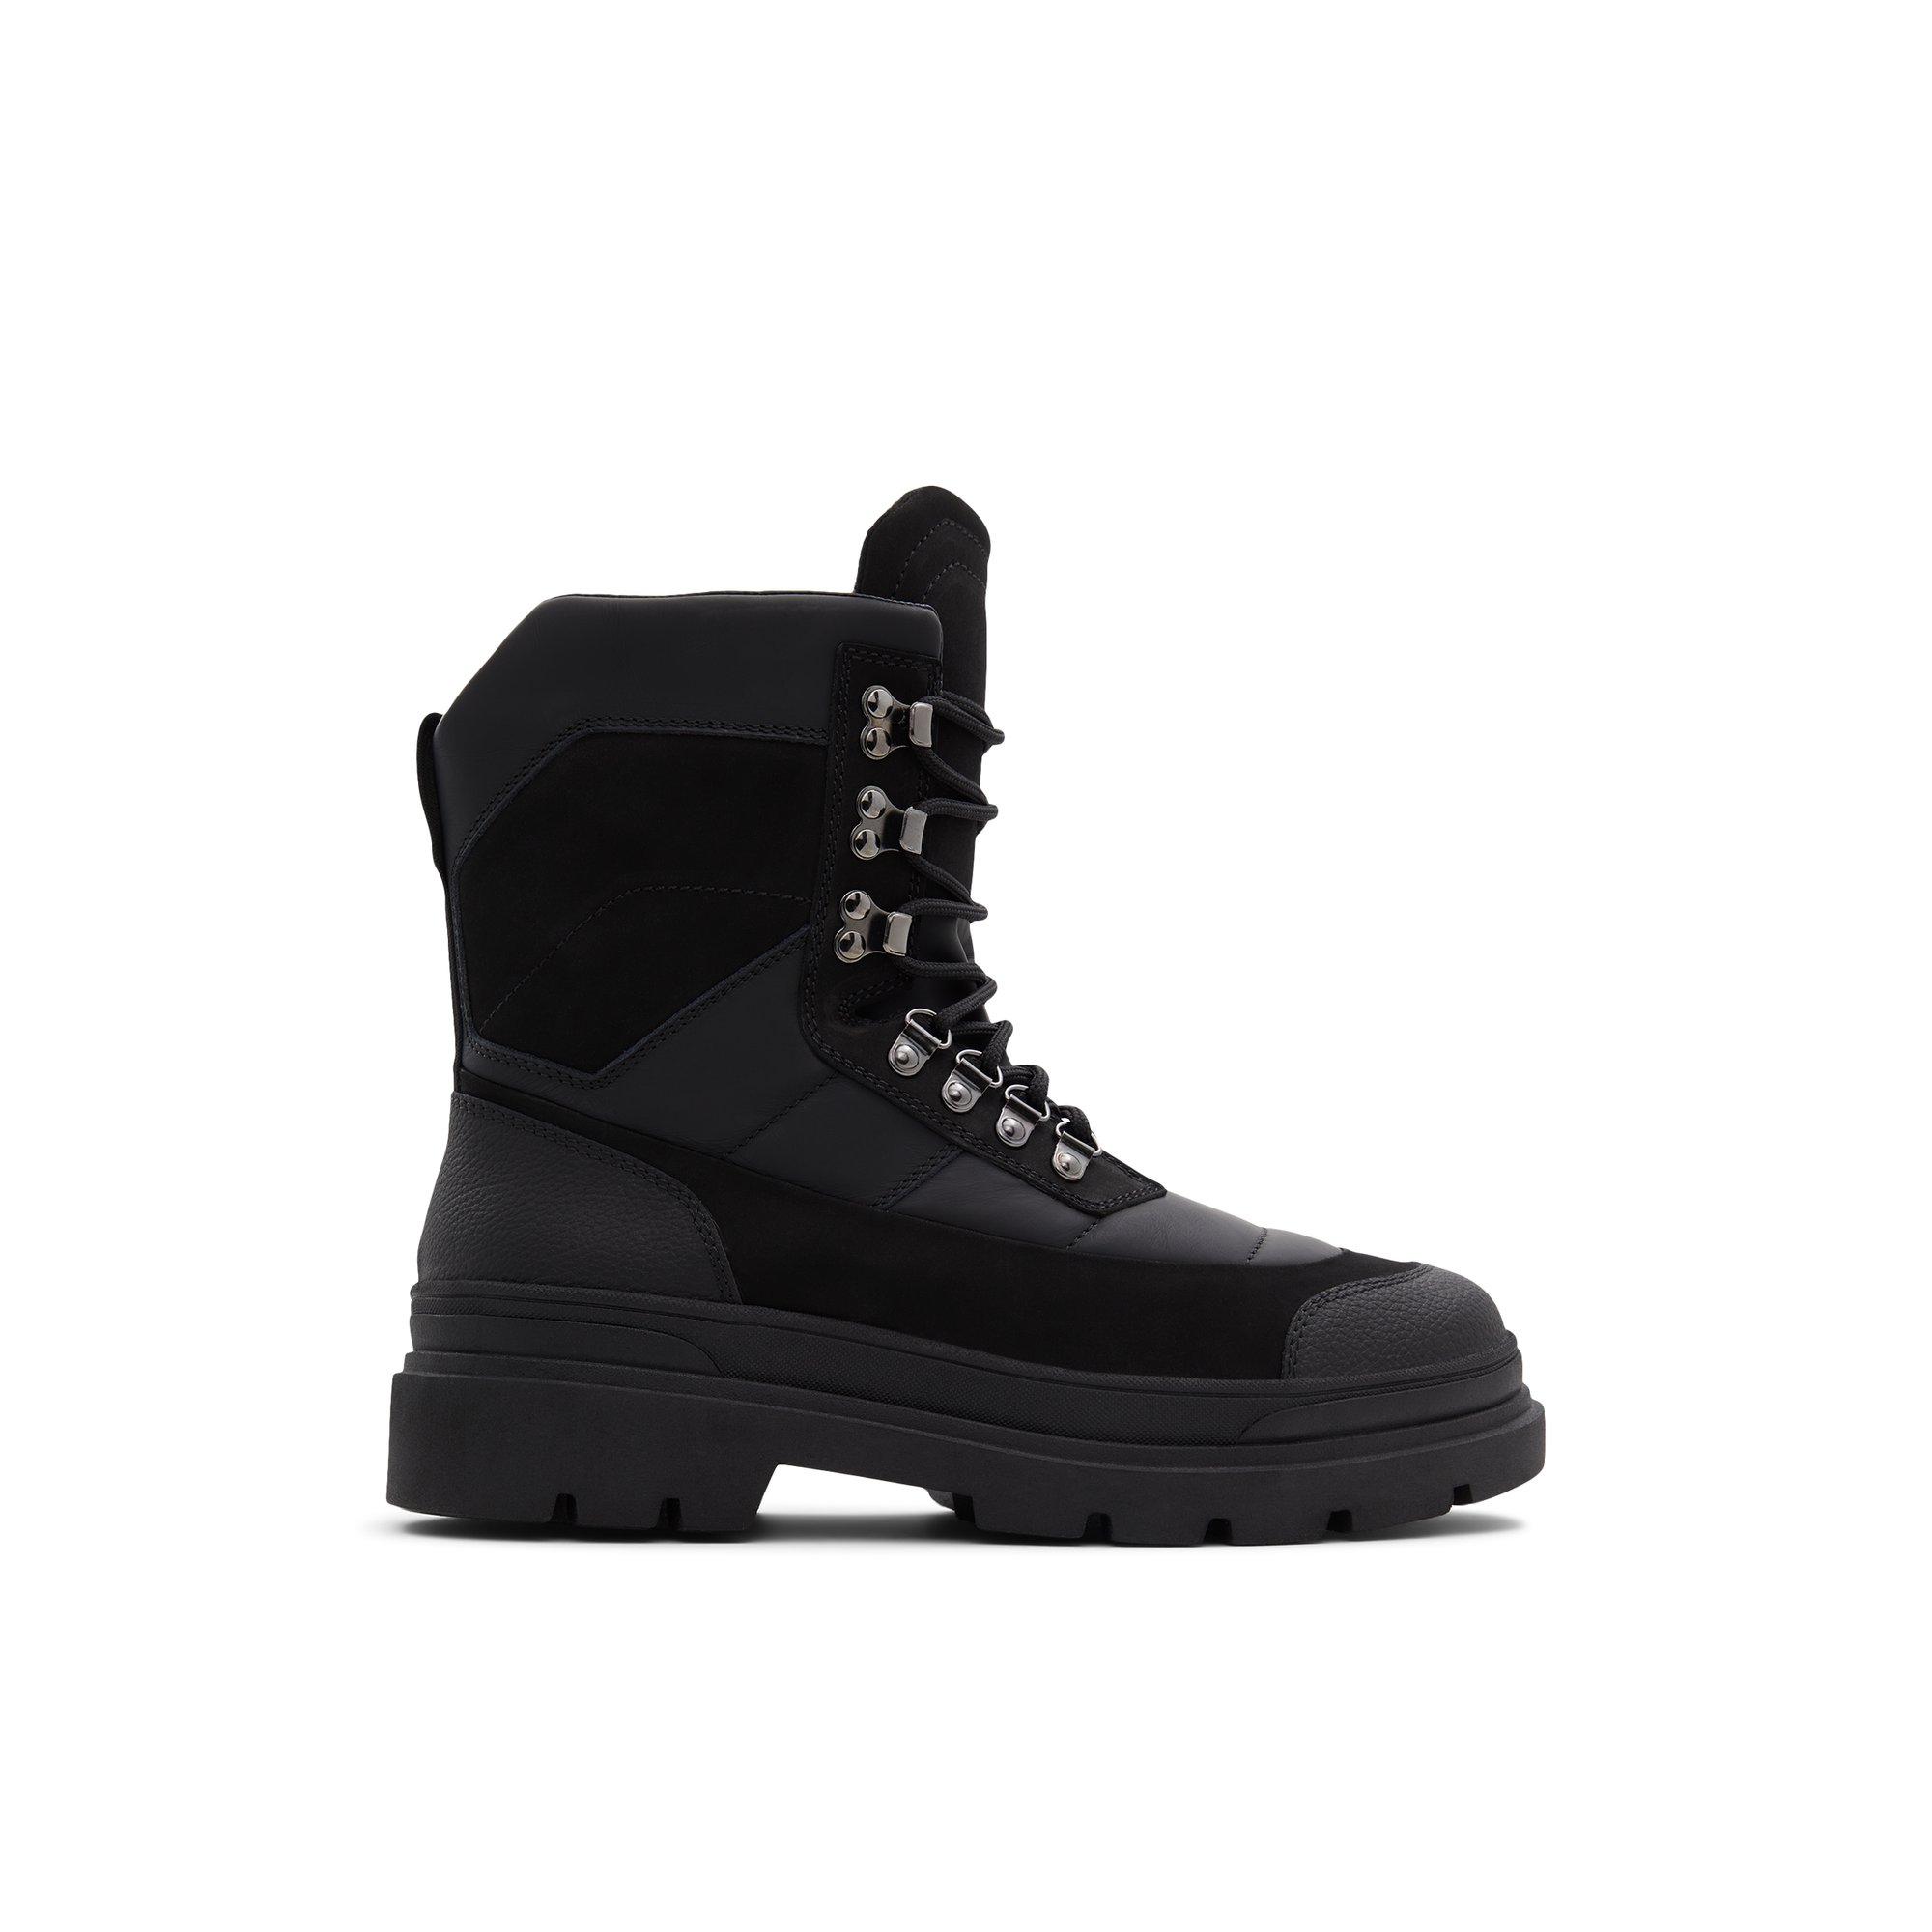 ALDO Northpole - Men's Winter Boot - Black